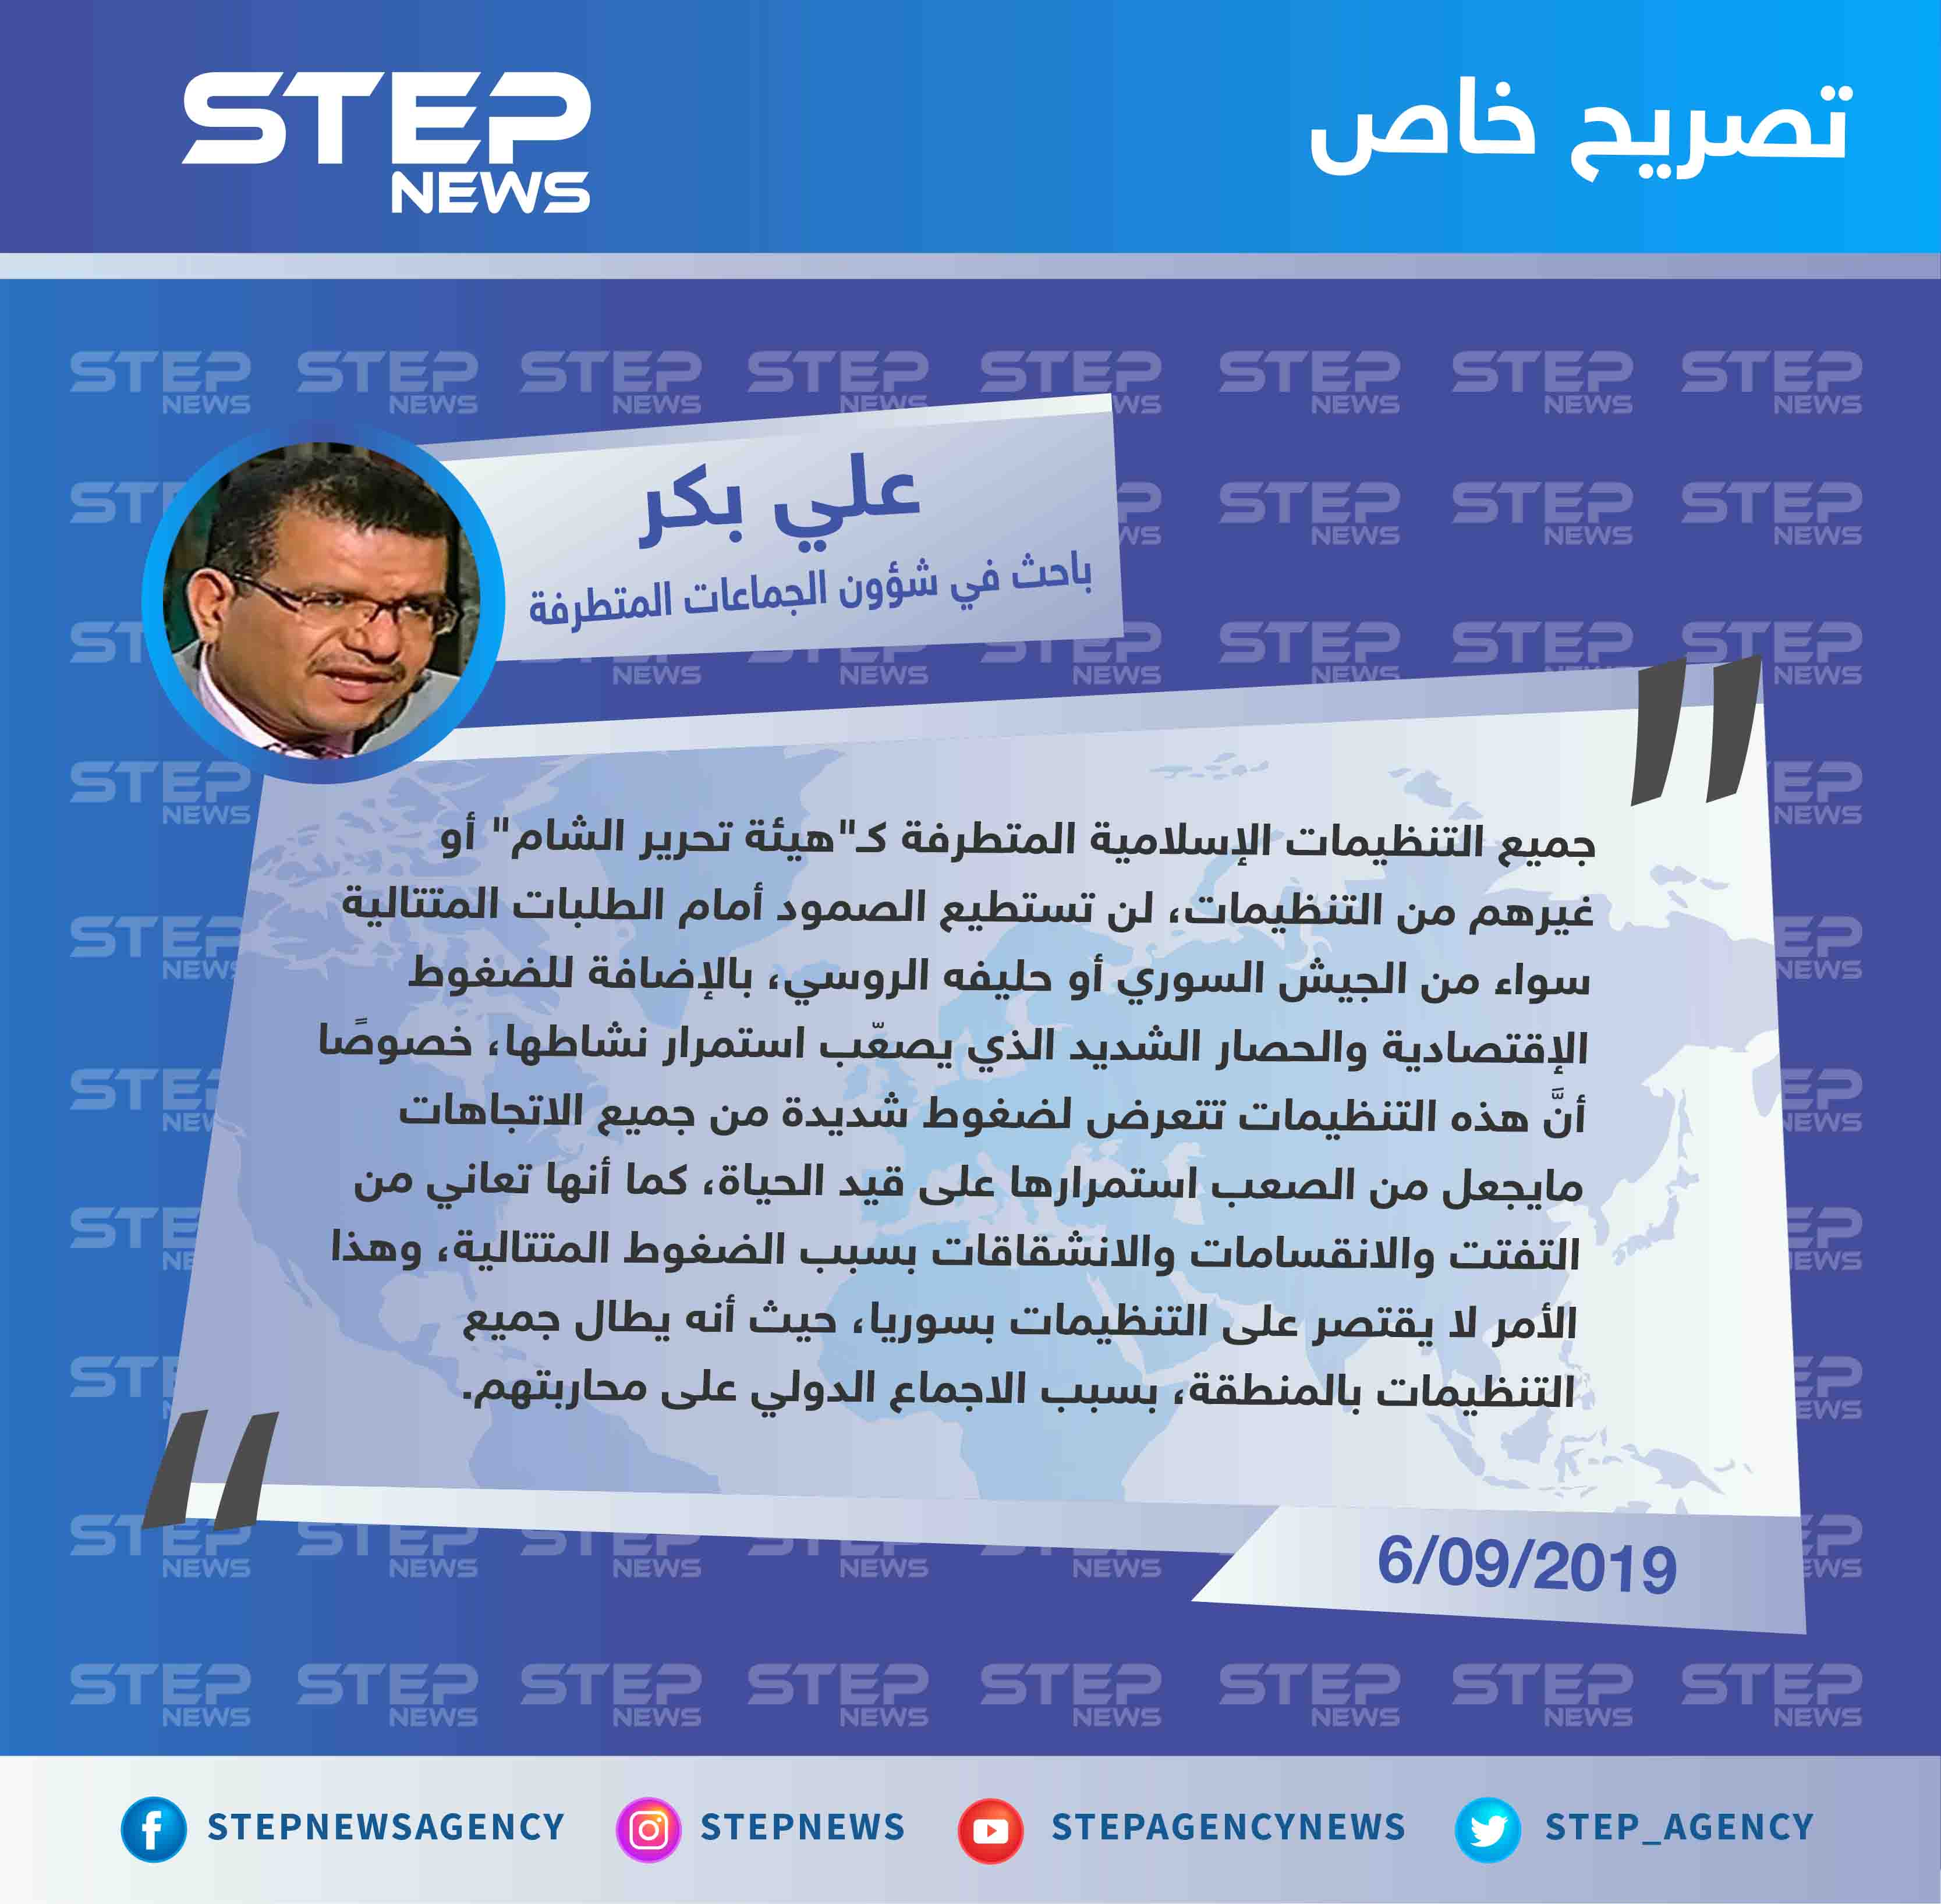 باحث مصري لستيب: "لهذه الأسباب لن تبقى التنظيمات الإسلامية المتطرفة على قيد الحياة!!"